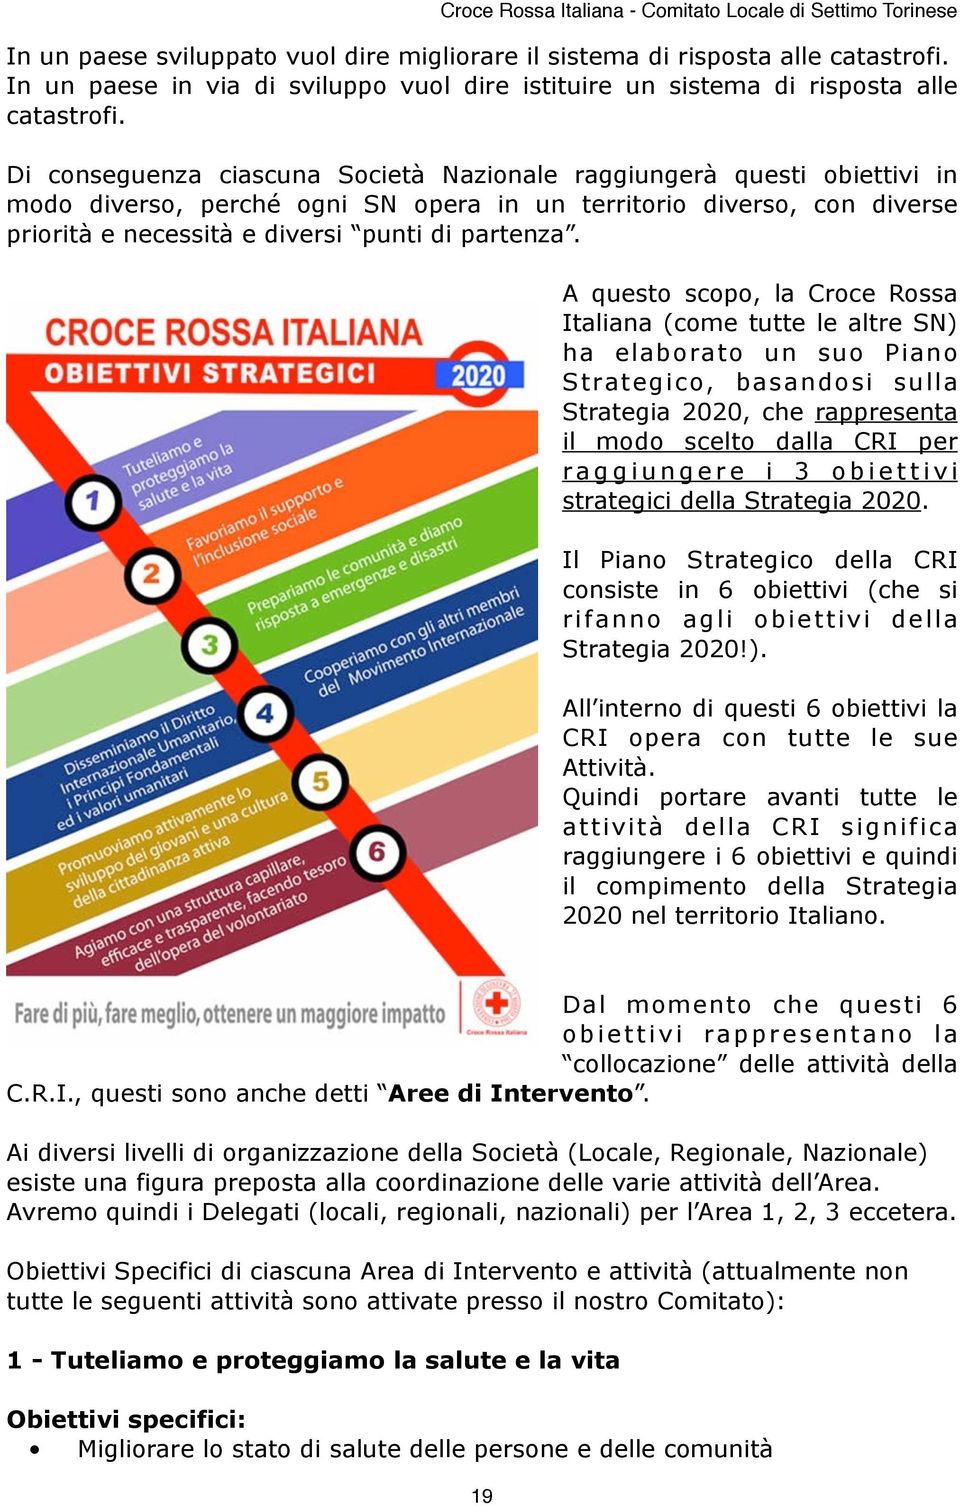 A questo scopo, la Croce Rossa Italiana (come tutte le altre SN) ha elaborato un suo Piano Strategico, basandosi sulla Strategia 2020, che rappresenta il modo scelto dalla CRI per raggiungere i 3